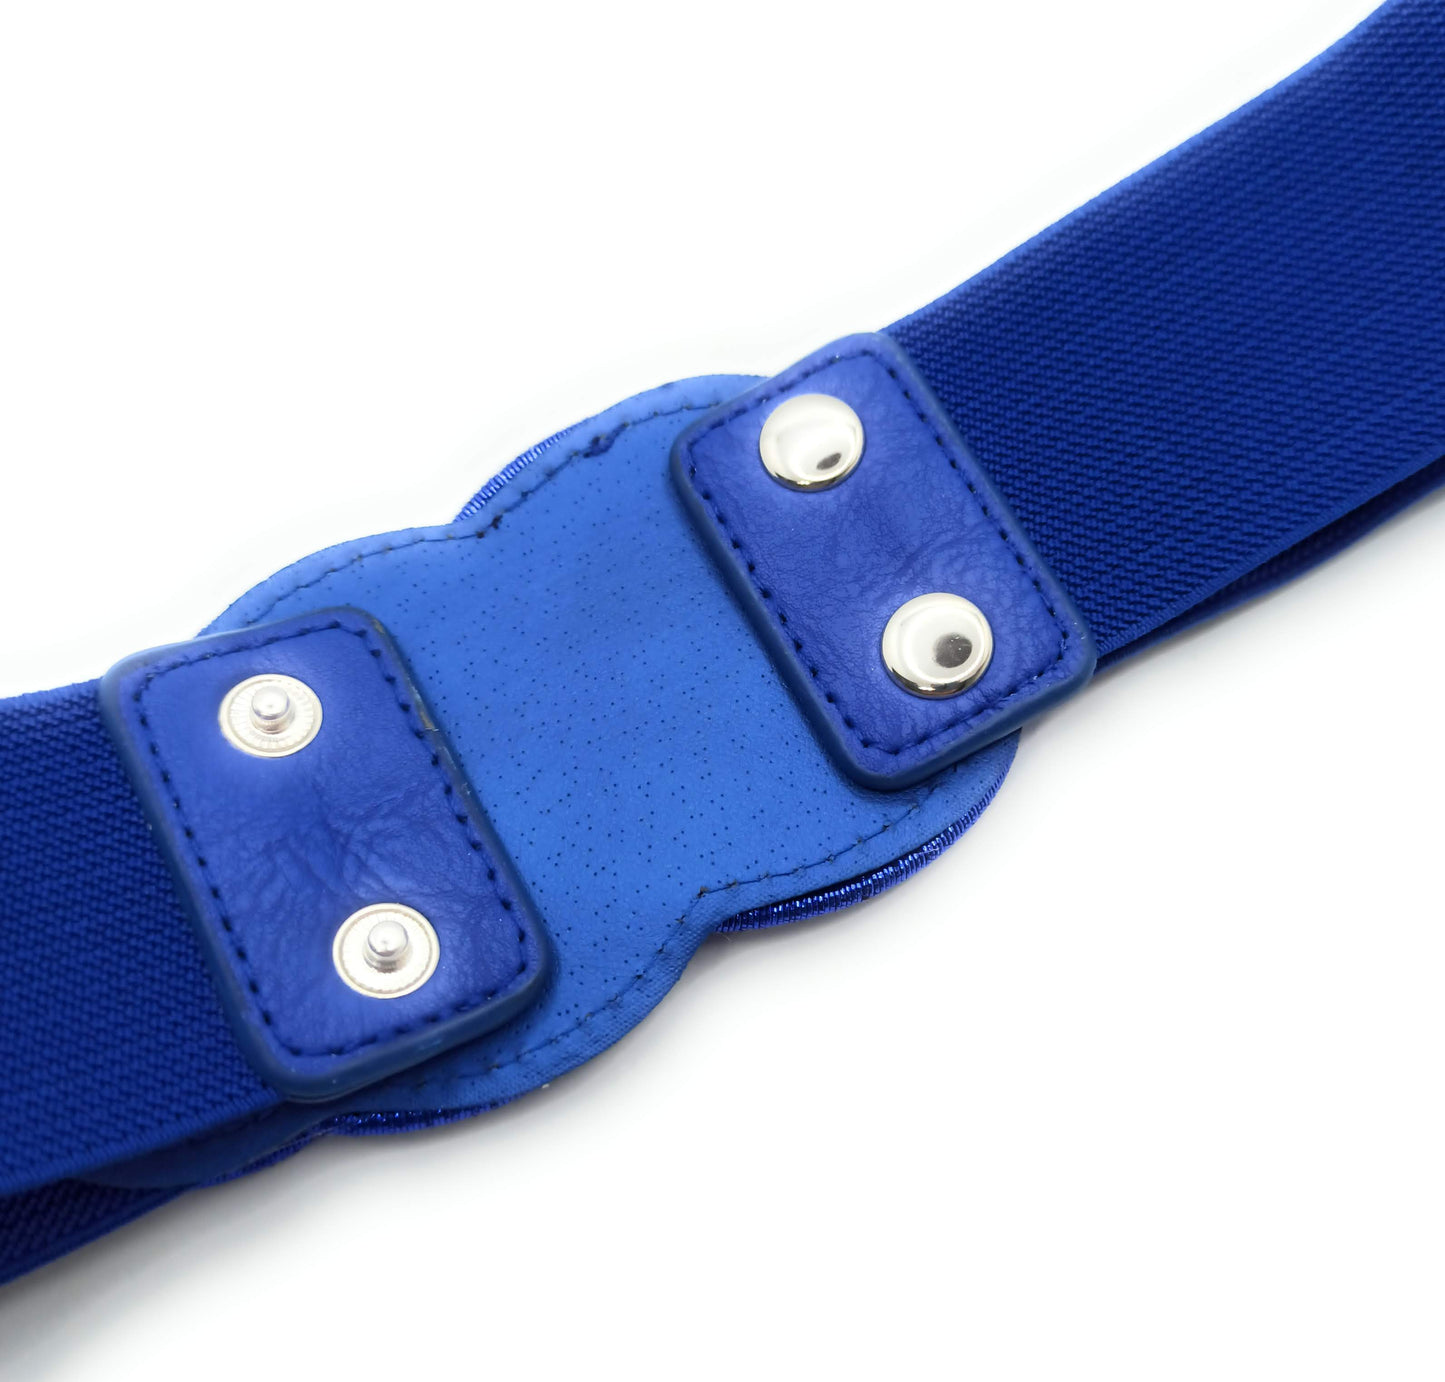 Cinturón Elástico Fiesta · Infinito Azul (última unidad!)